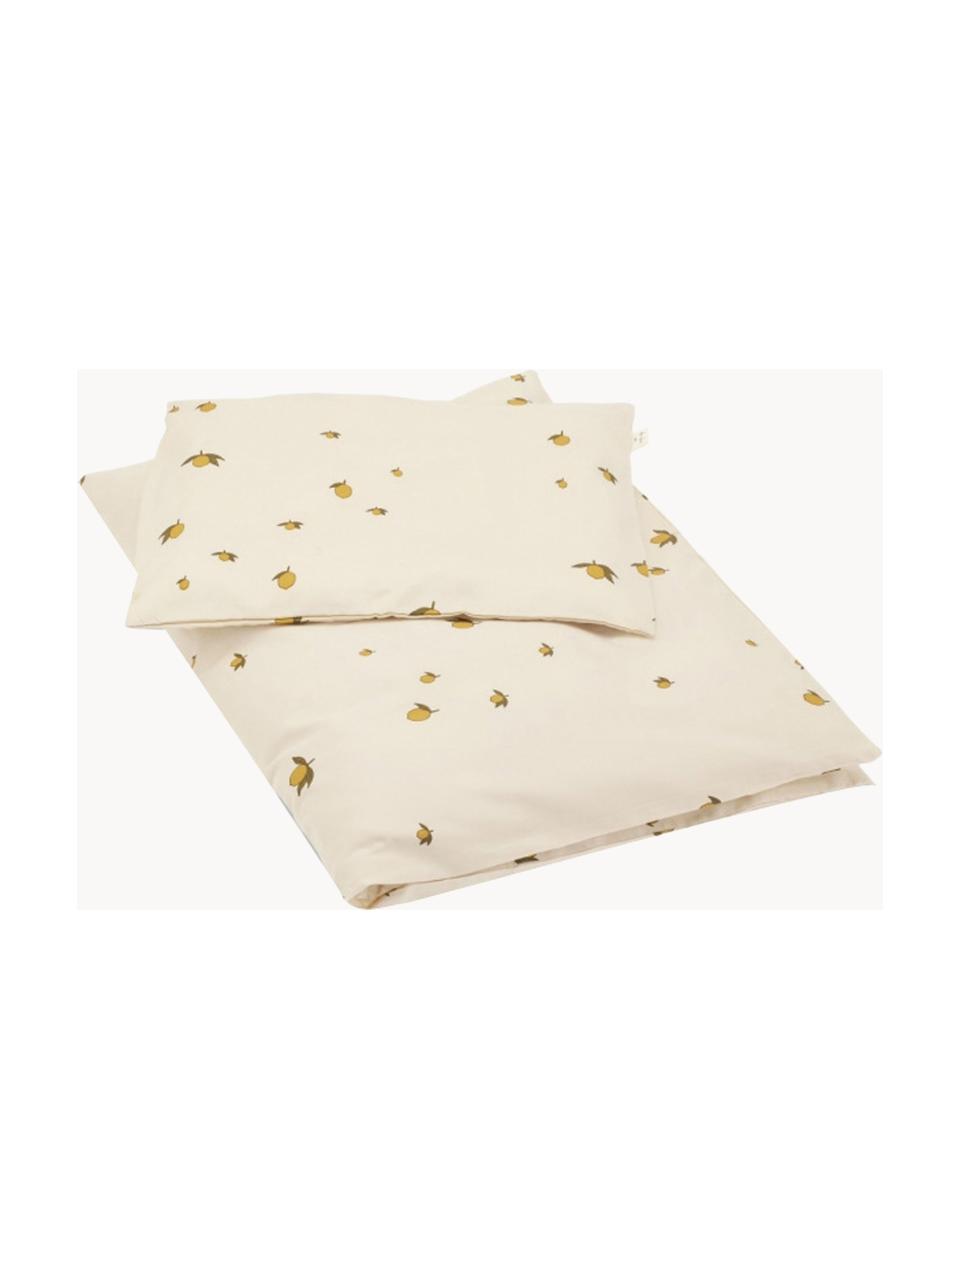 Detská posteľná bielizeň z organickej bavlny Moonlight, 100 % organická bavlna, certifikát GOTS
Bavlna je príjemná na dotyk, dobre absorbuje vlhkosť a je vhodná pre alergikov., Svetlobéžová, motív citróna, 100 x 140 cm + 1 vankúš 40 x 45 cm